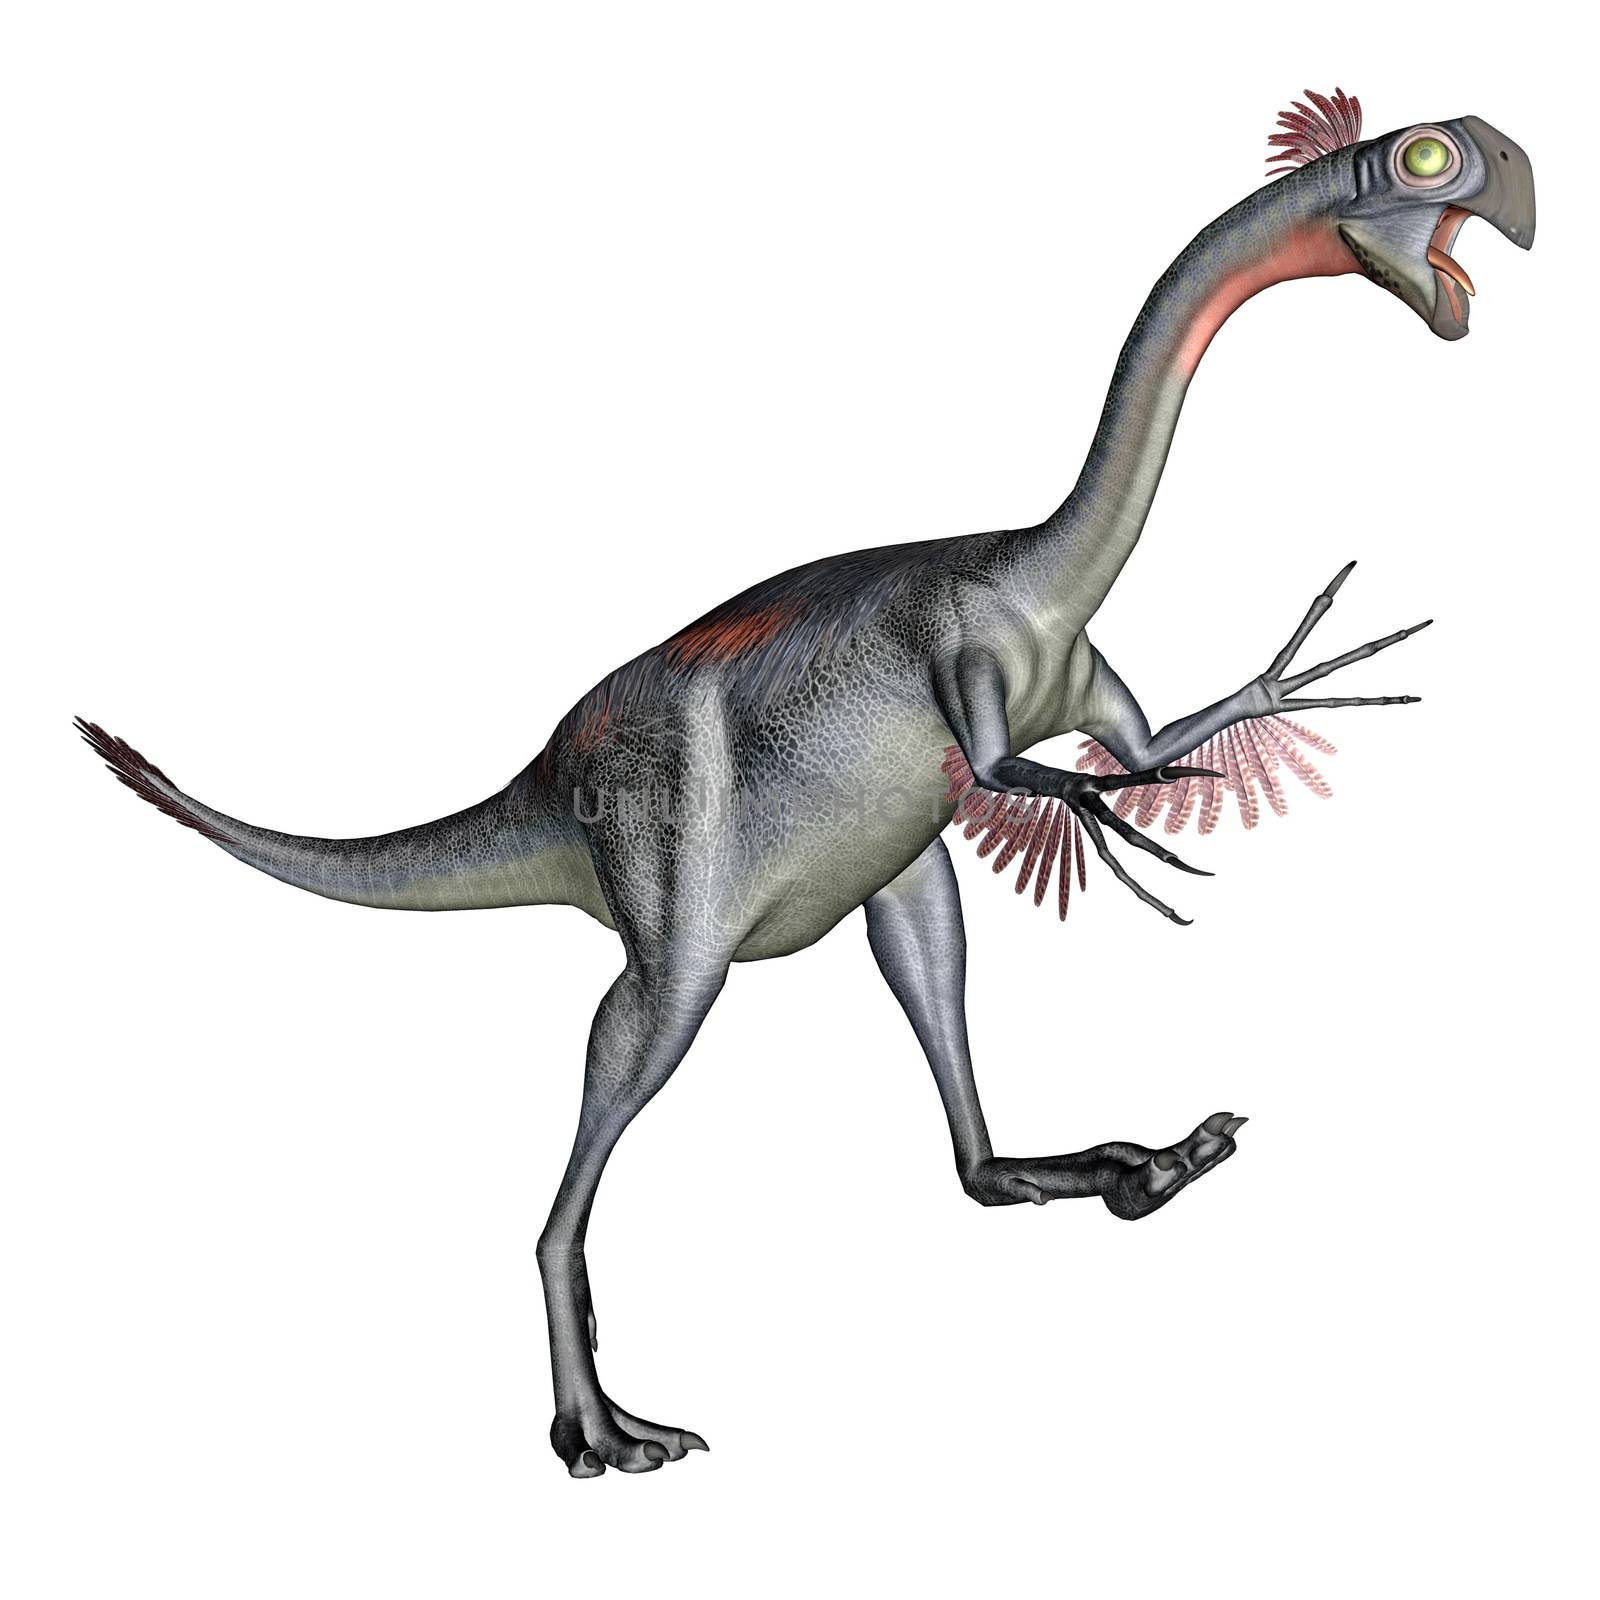 Gigantoraptor dinosaur walking quietly in white background